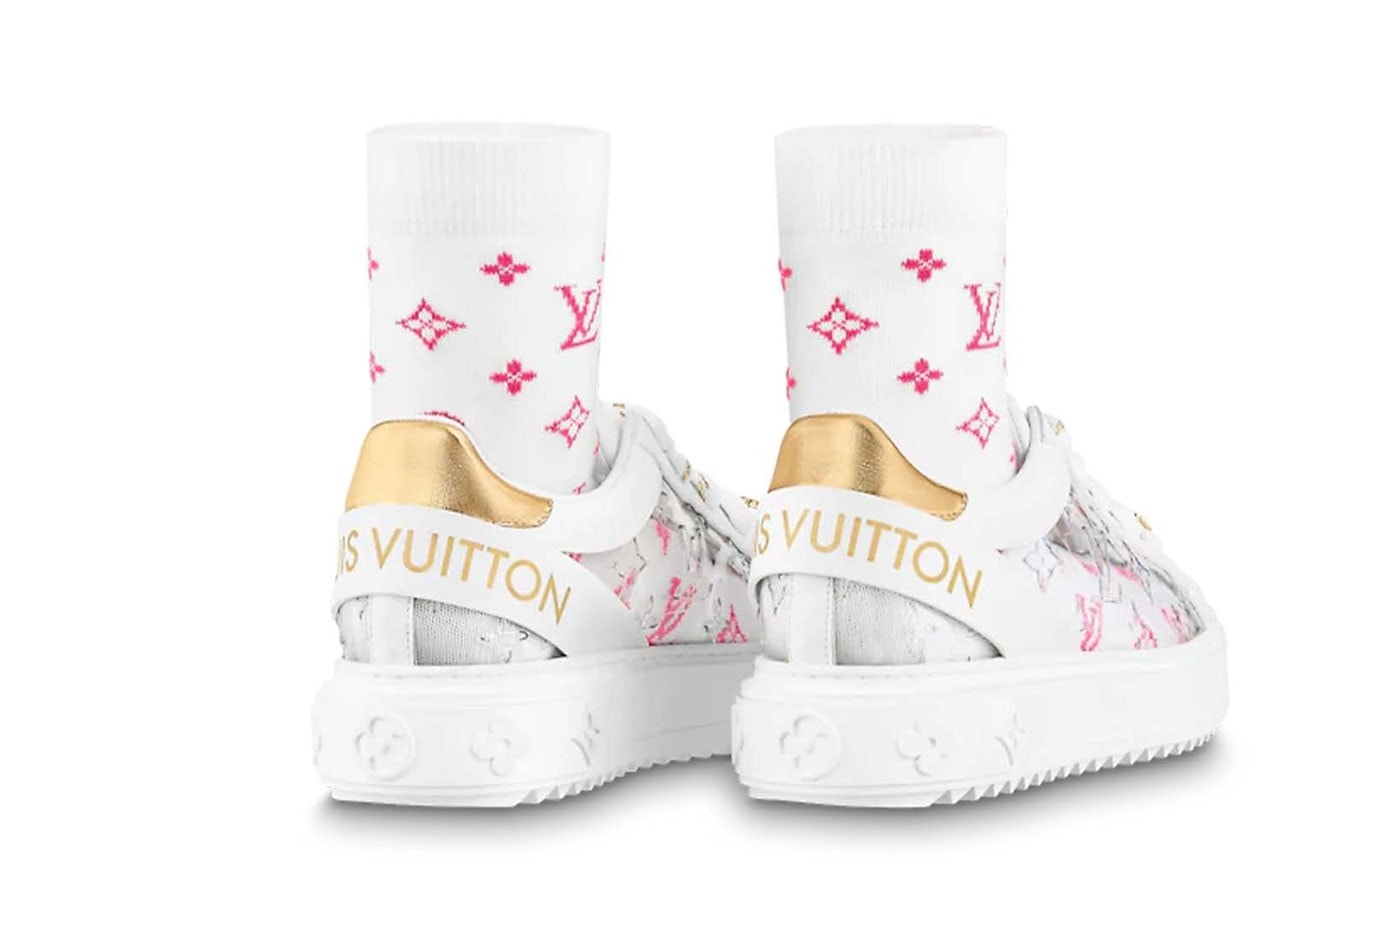 Louis Vuitton 推出最新透明款 Time Out 運動鞋